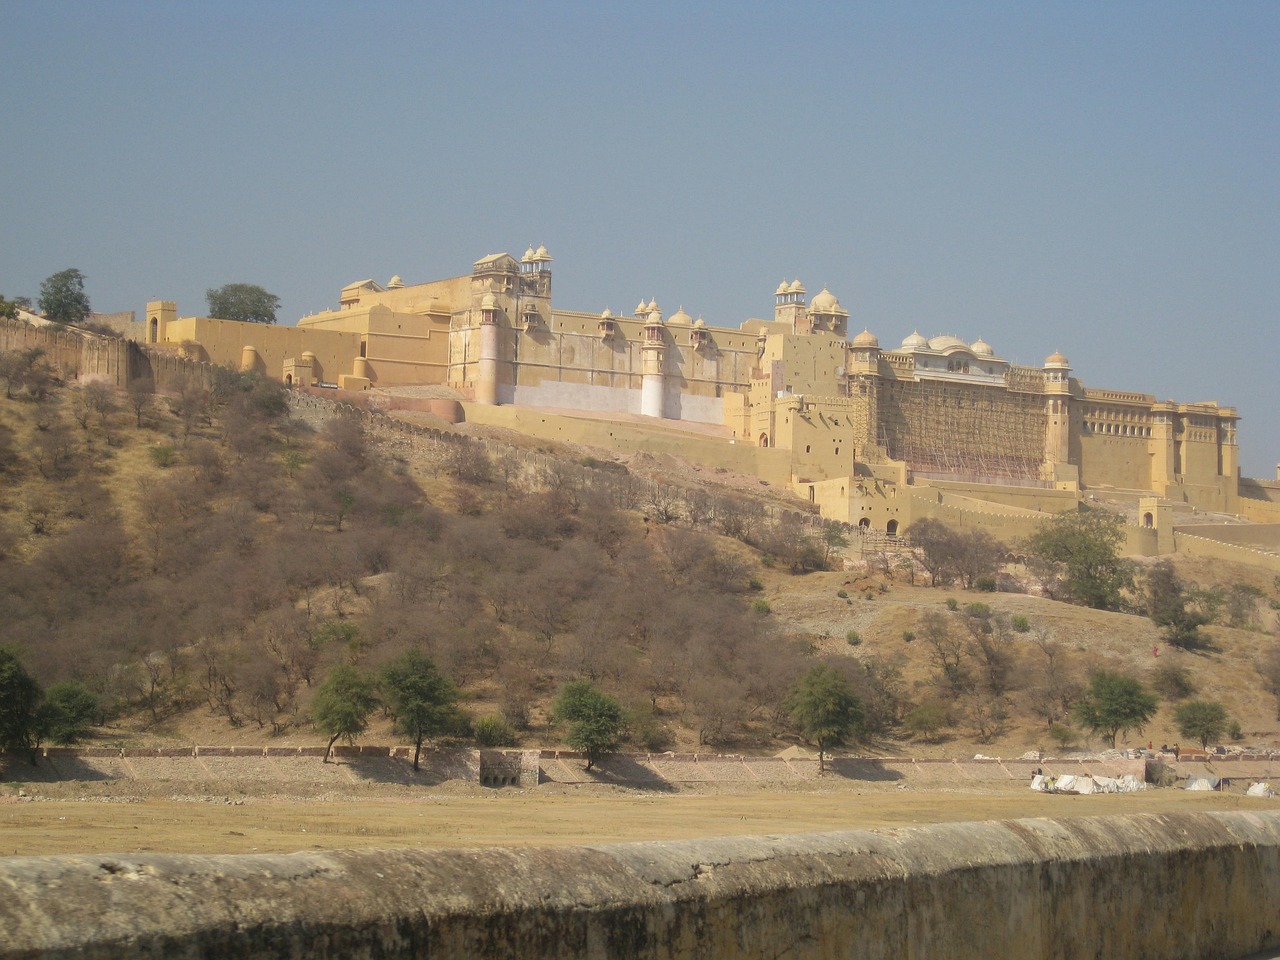 Jaipur India